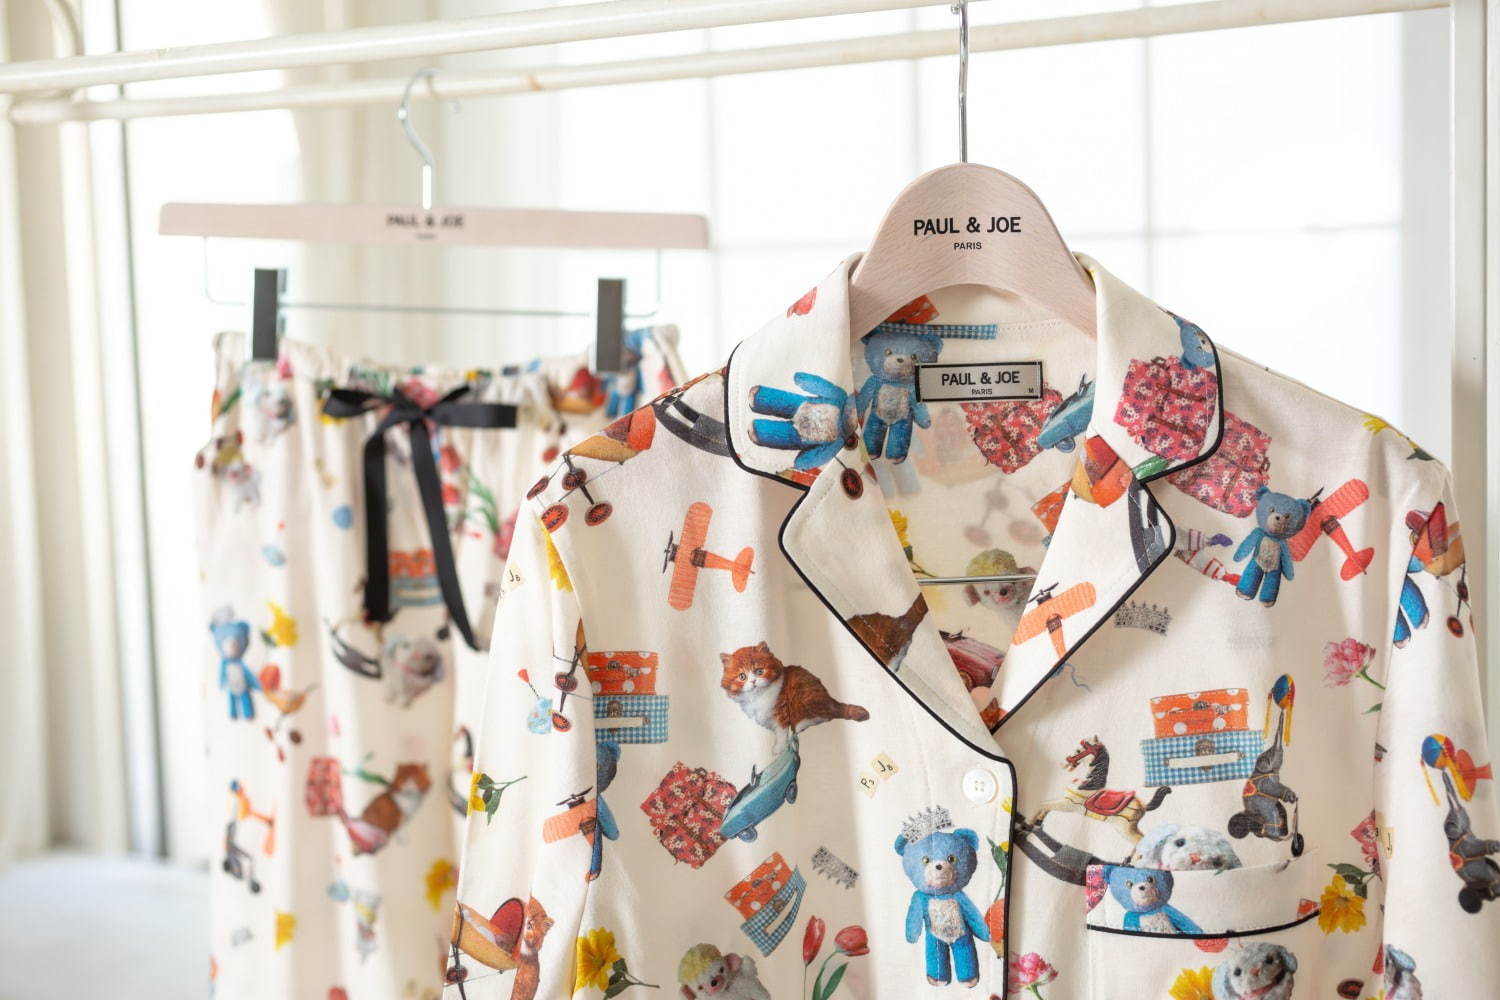 レディース ルームウェア特集 Guからジェラピケまで 大人かわいい人気パジャマを紹介 ファッションプレス